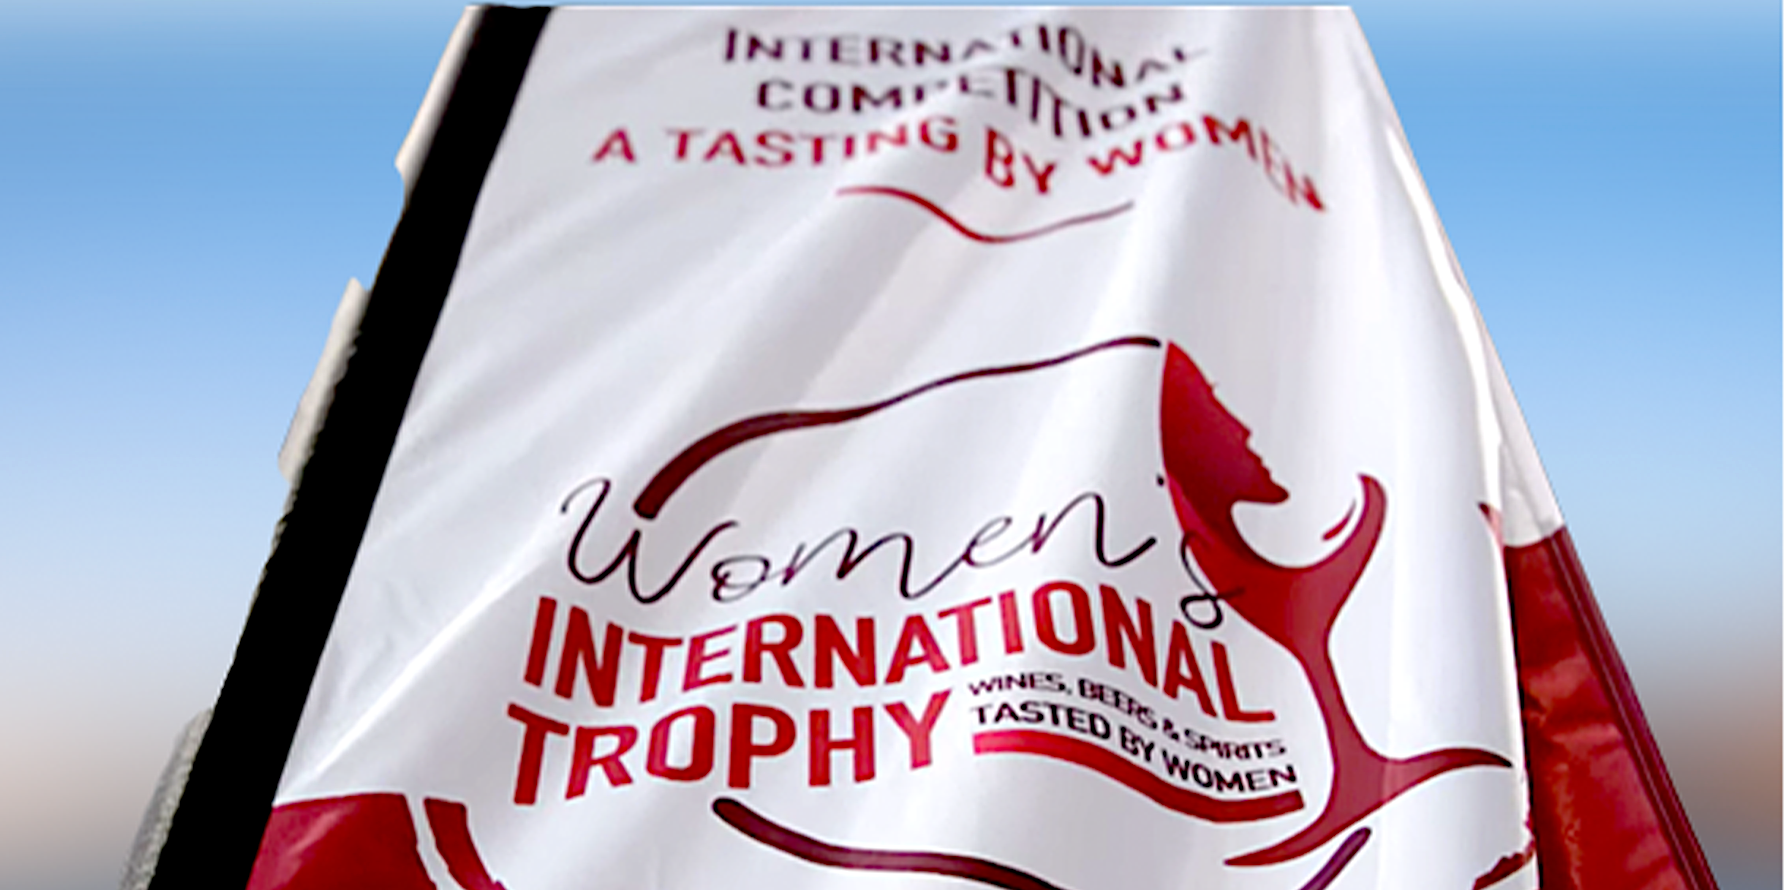 Women’s International Trophy un concorso birrario tutto al femminile.